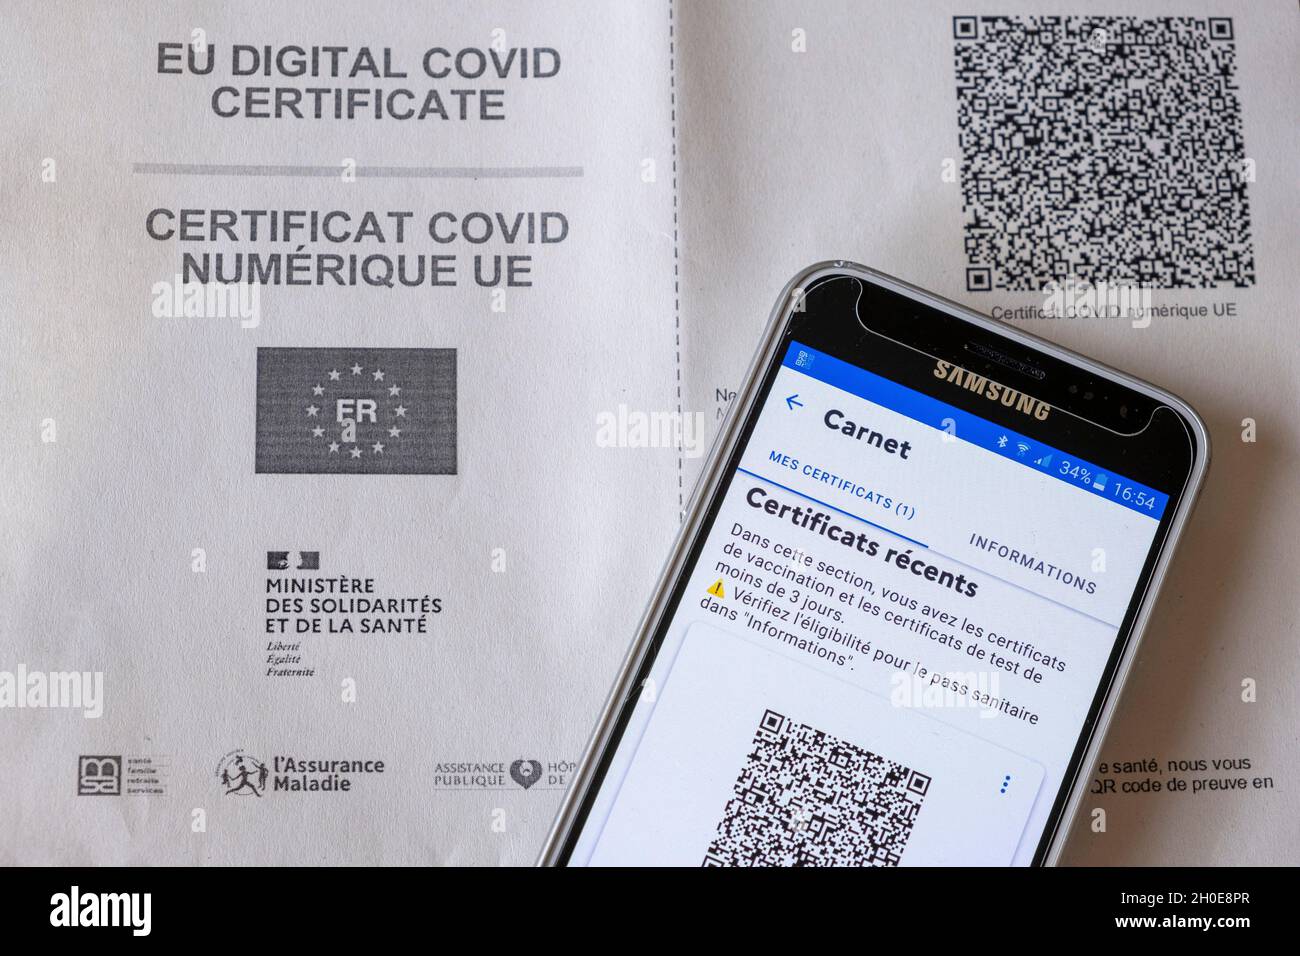 Digitales EU-COVID-Zertifikat, Nachweis der Impfung. Gesundheitsausweis: Impfpass mit einem QR-Code, der nach der zweiten Injektion für zwei Dosen ausgestellt wurde Stockfoto